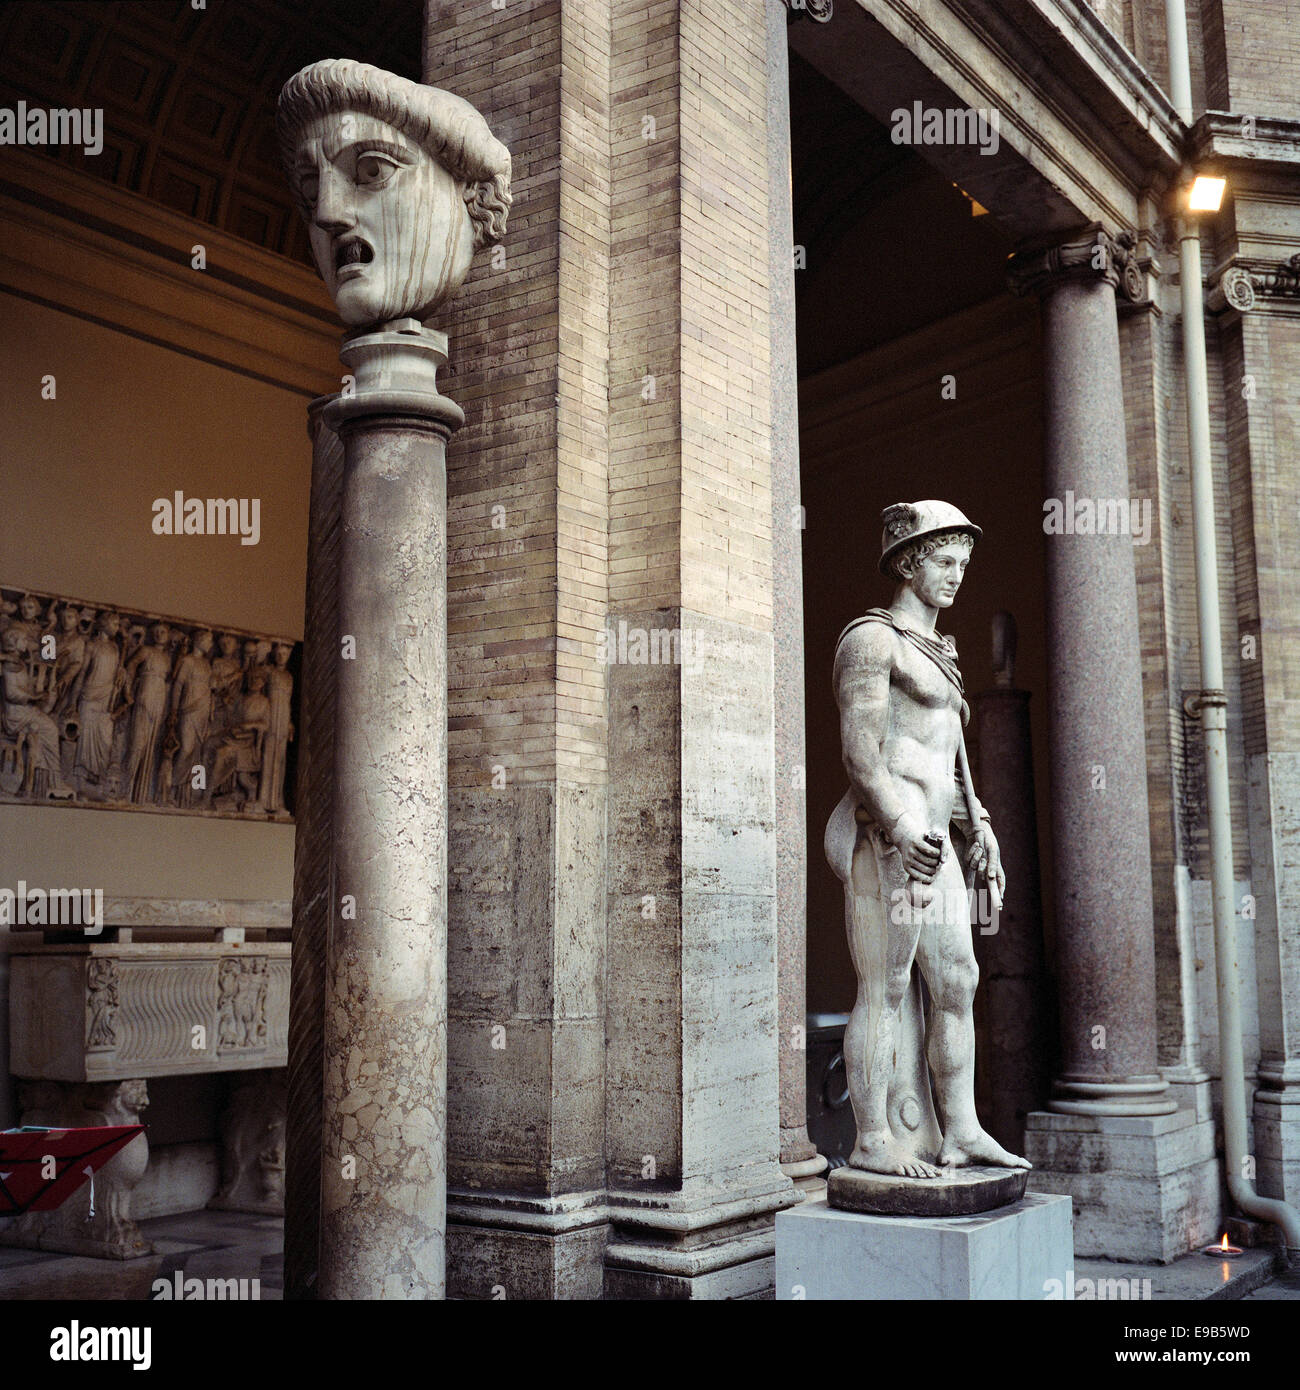 Roma. L'Italia. Musei Vaticani. Statue nel Cortile Ottagono, sul cortile interno del Palazzo Belvedere, Museo Pio-Clementino. Foto Stock